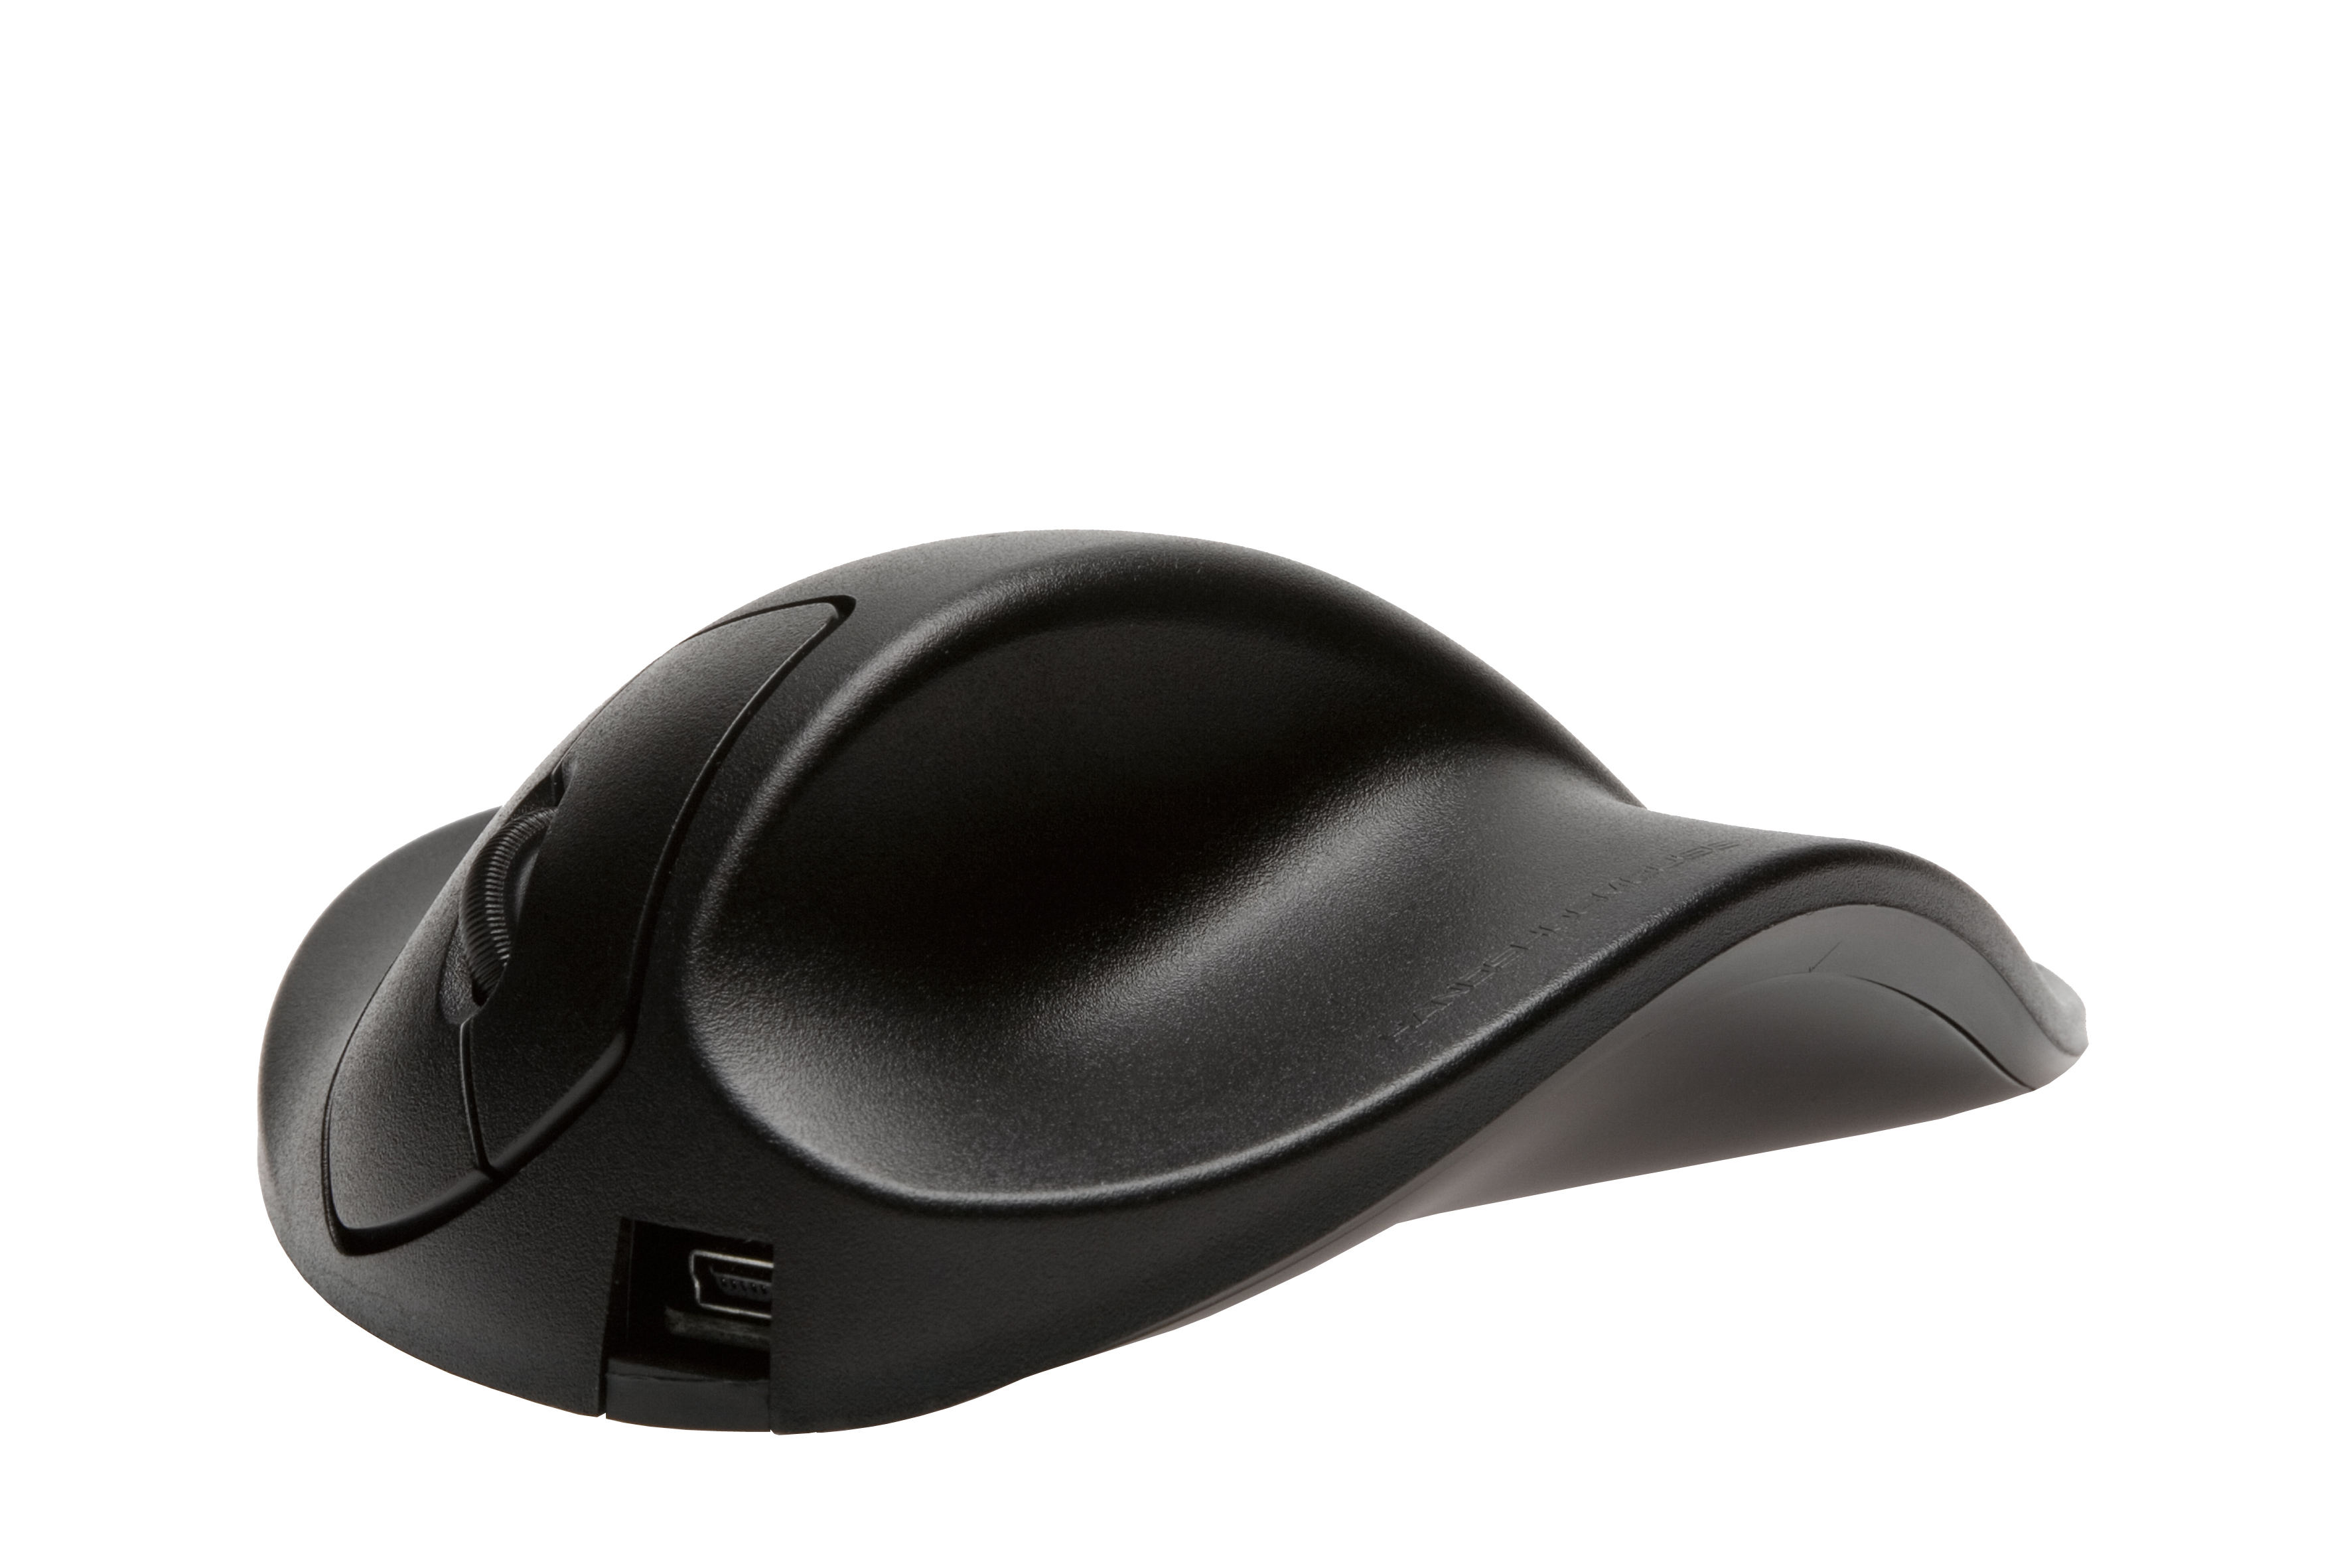 Maus, schwarz ergonomische HIPPUS LS2WL